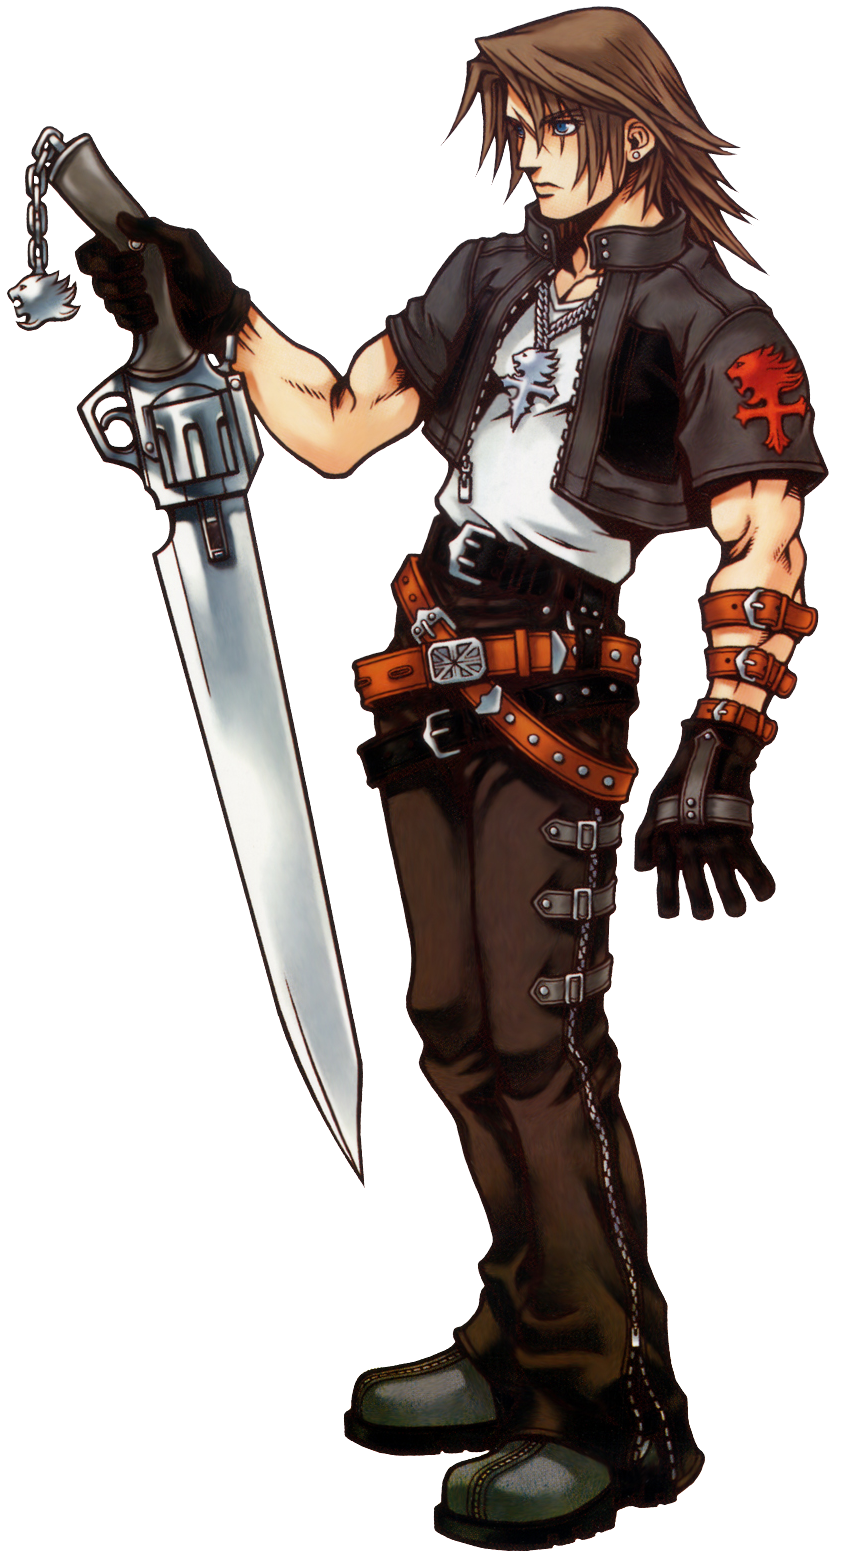 KHUX Riku KHIII Avatar Board - Kingdom Hearts = My Life